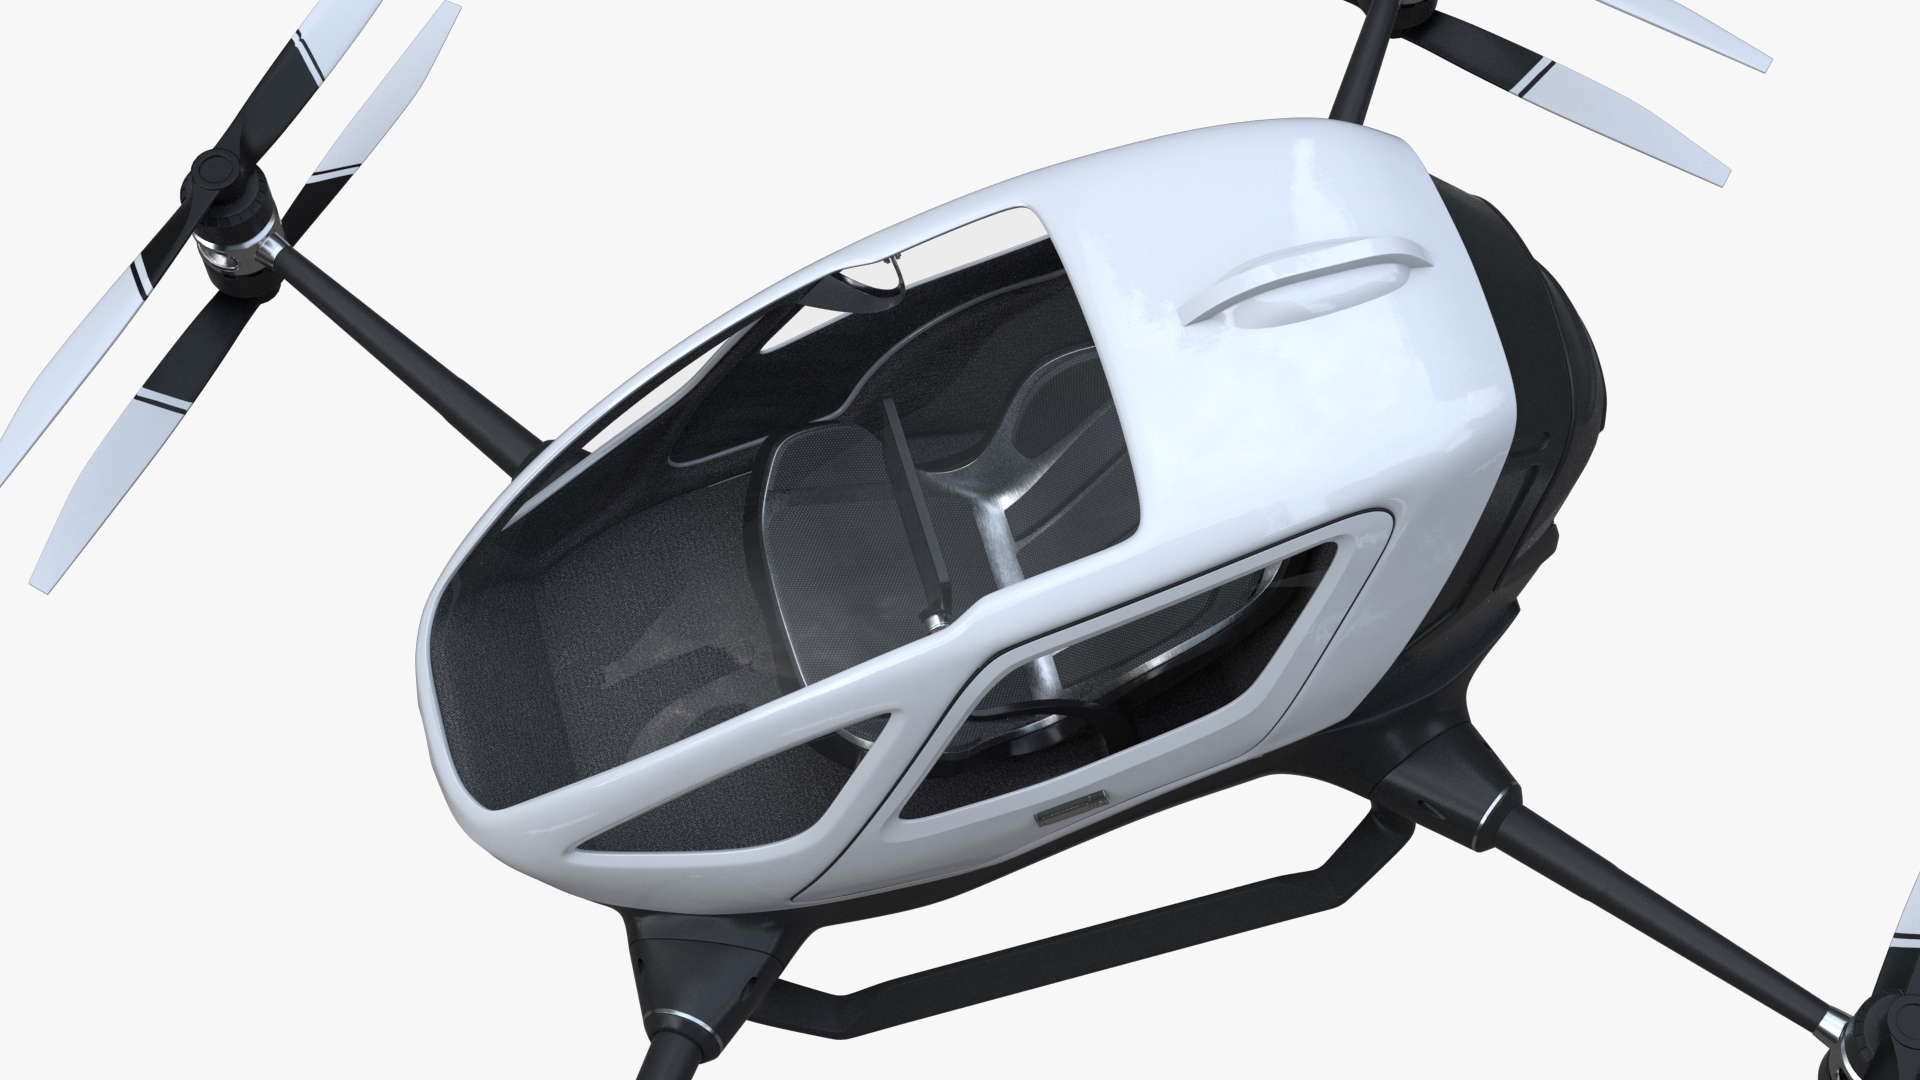 images/goods_img/2021040162/eHang Unbranded Single Passenger Aerial Drone 3D model/3.jpg